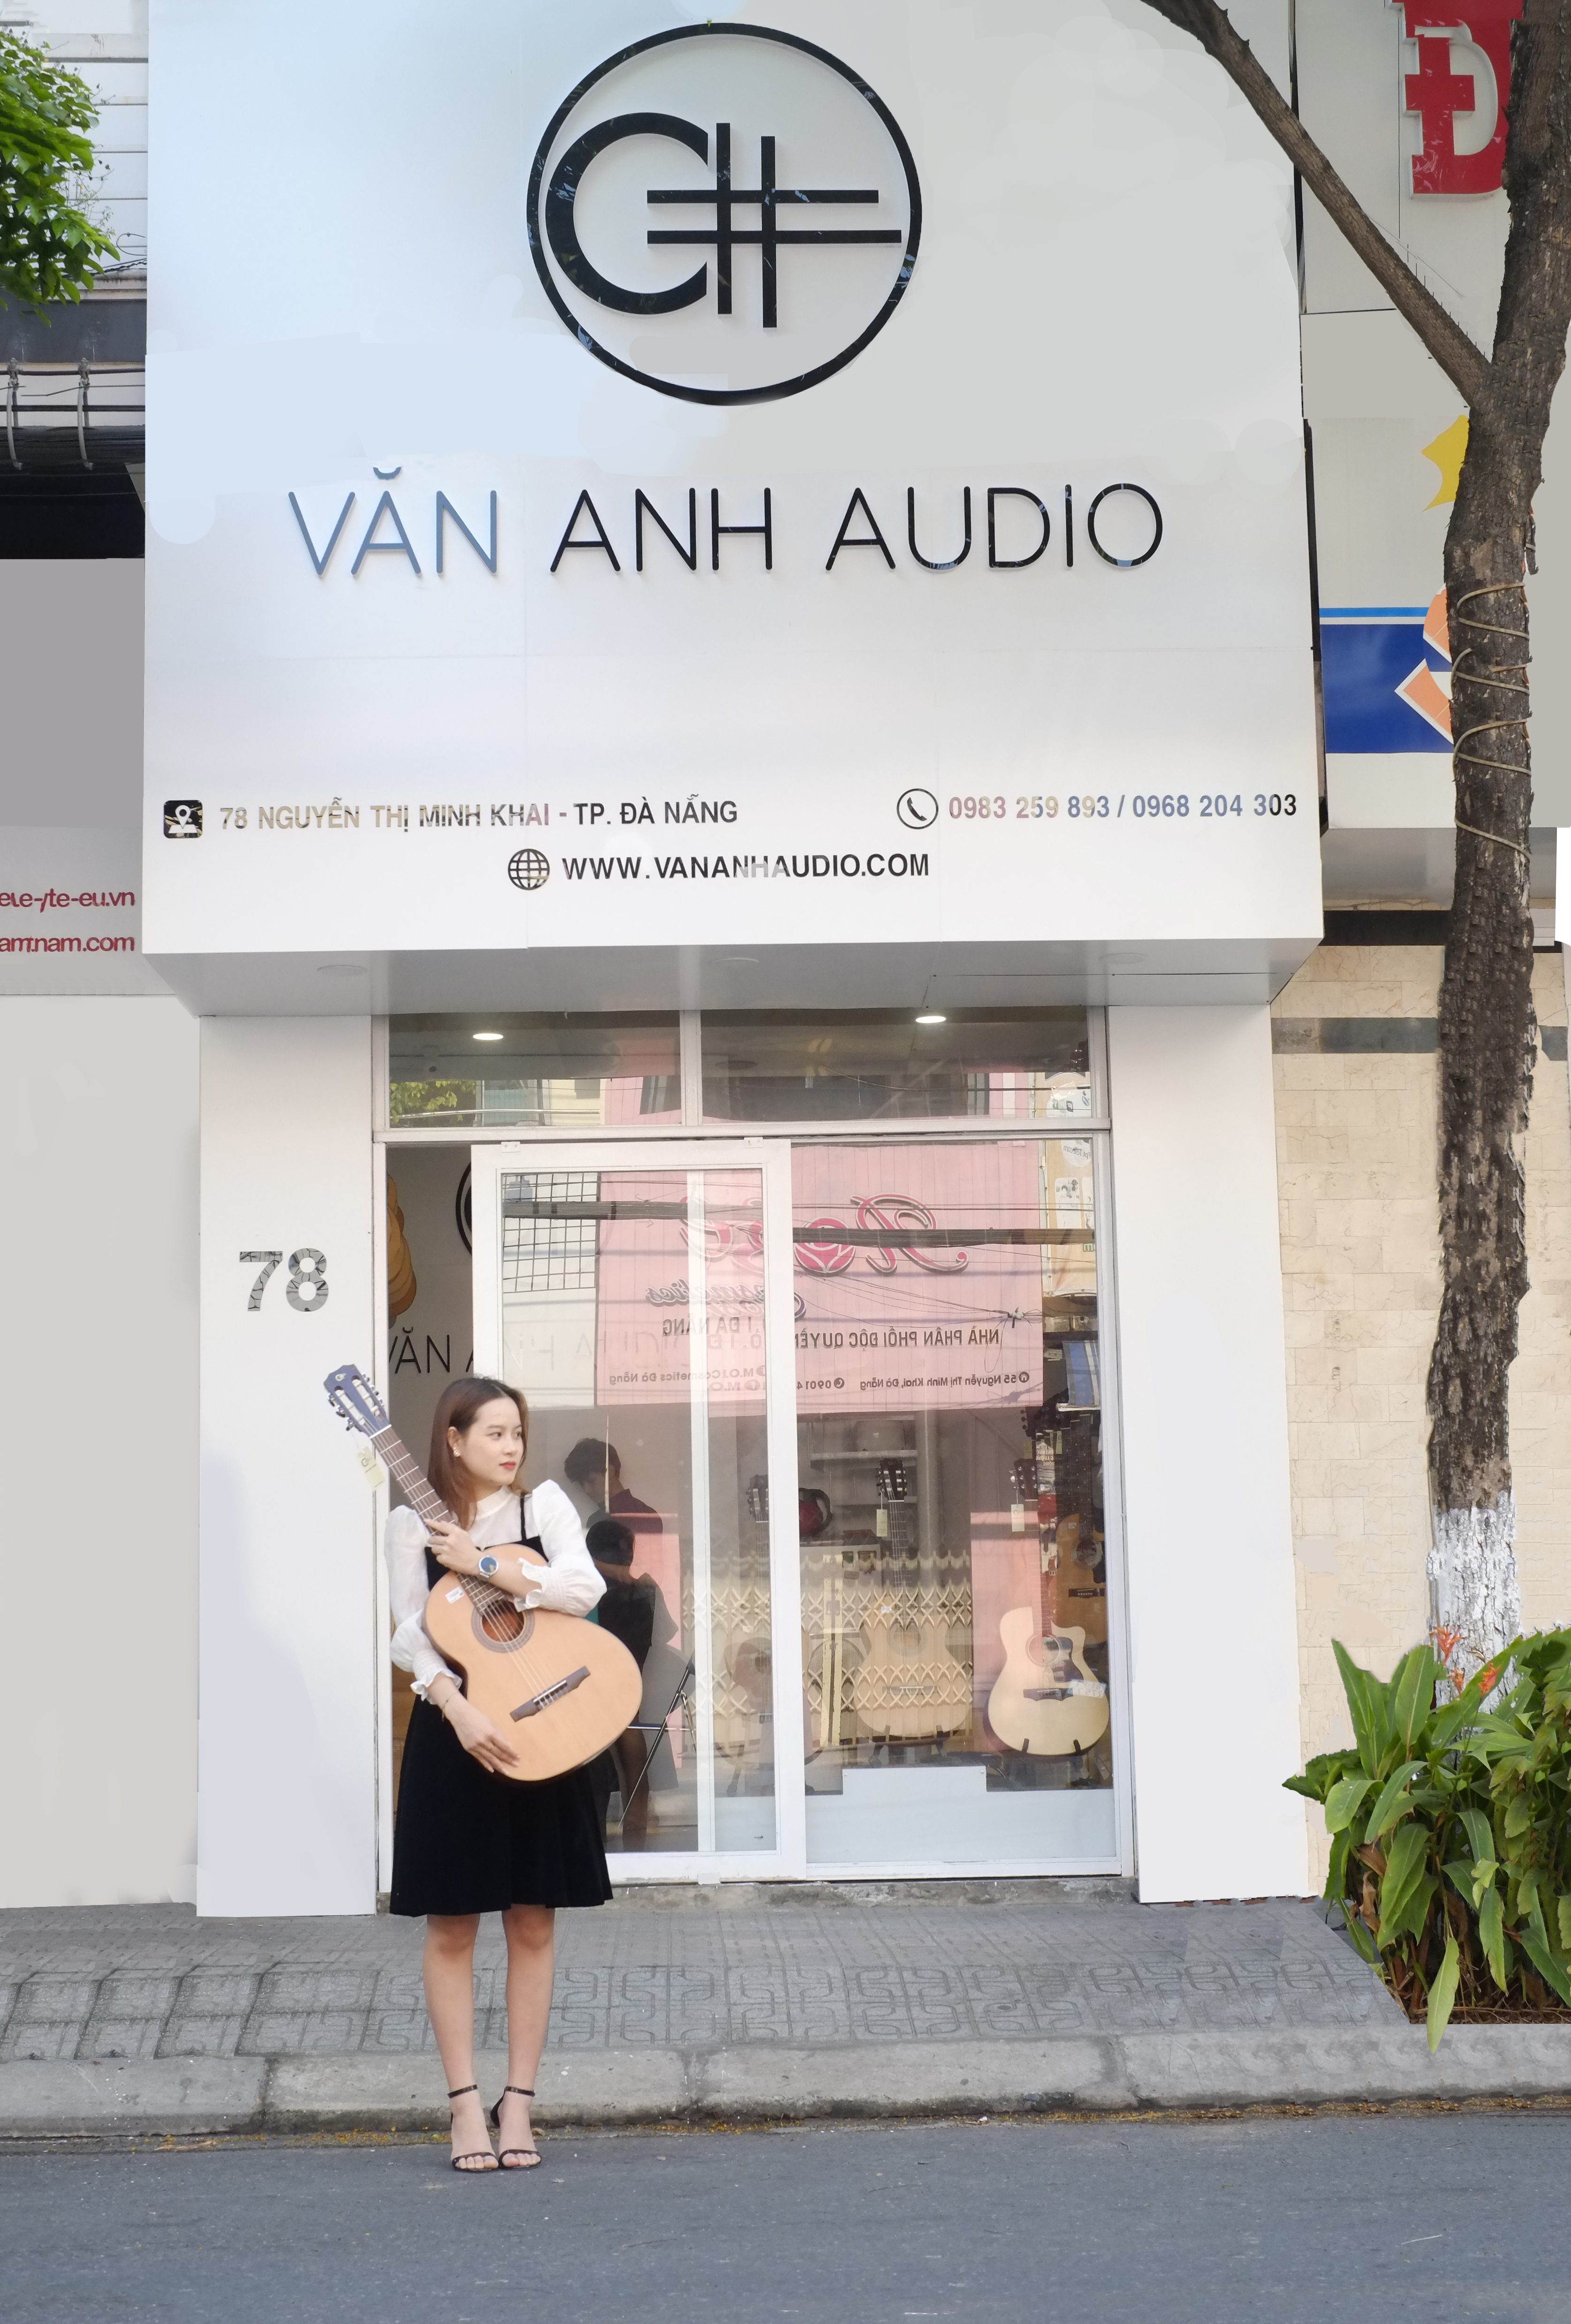 Shop đàn guitar Văn Anh Audio tại Đà Nẵng